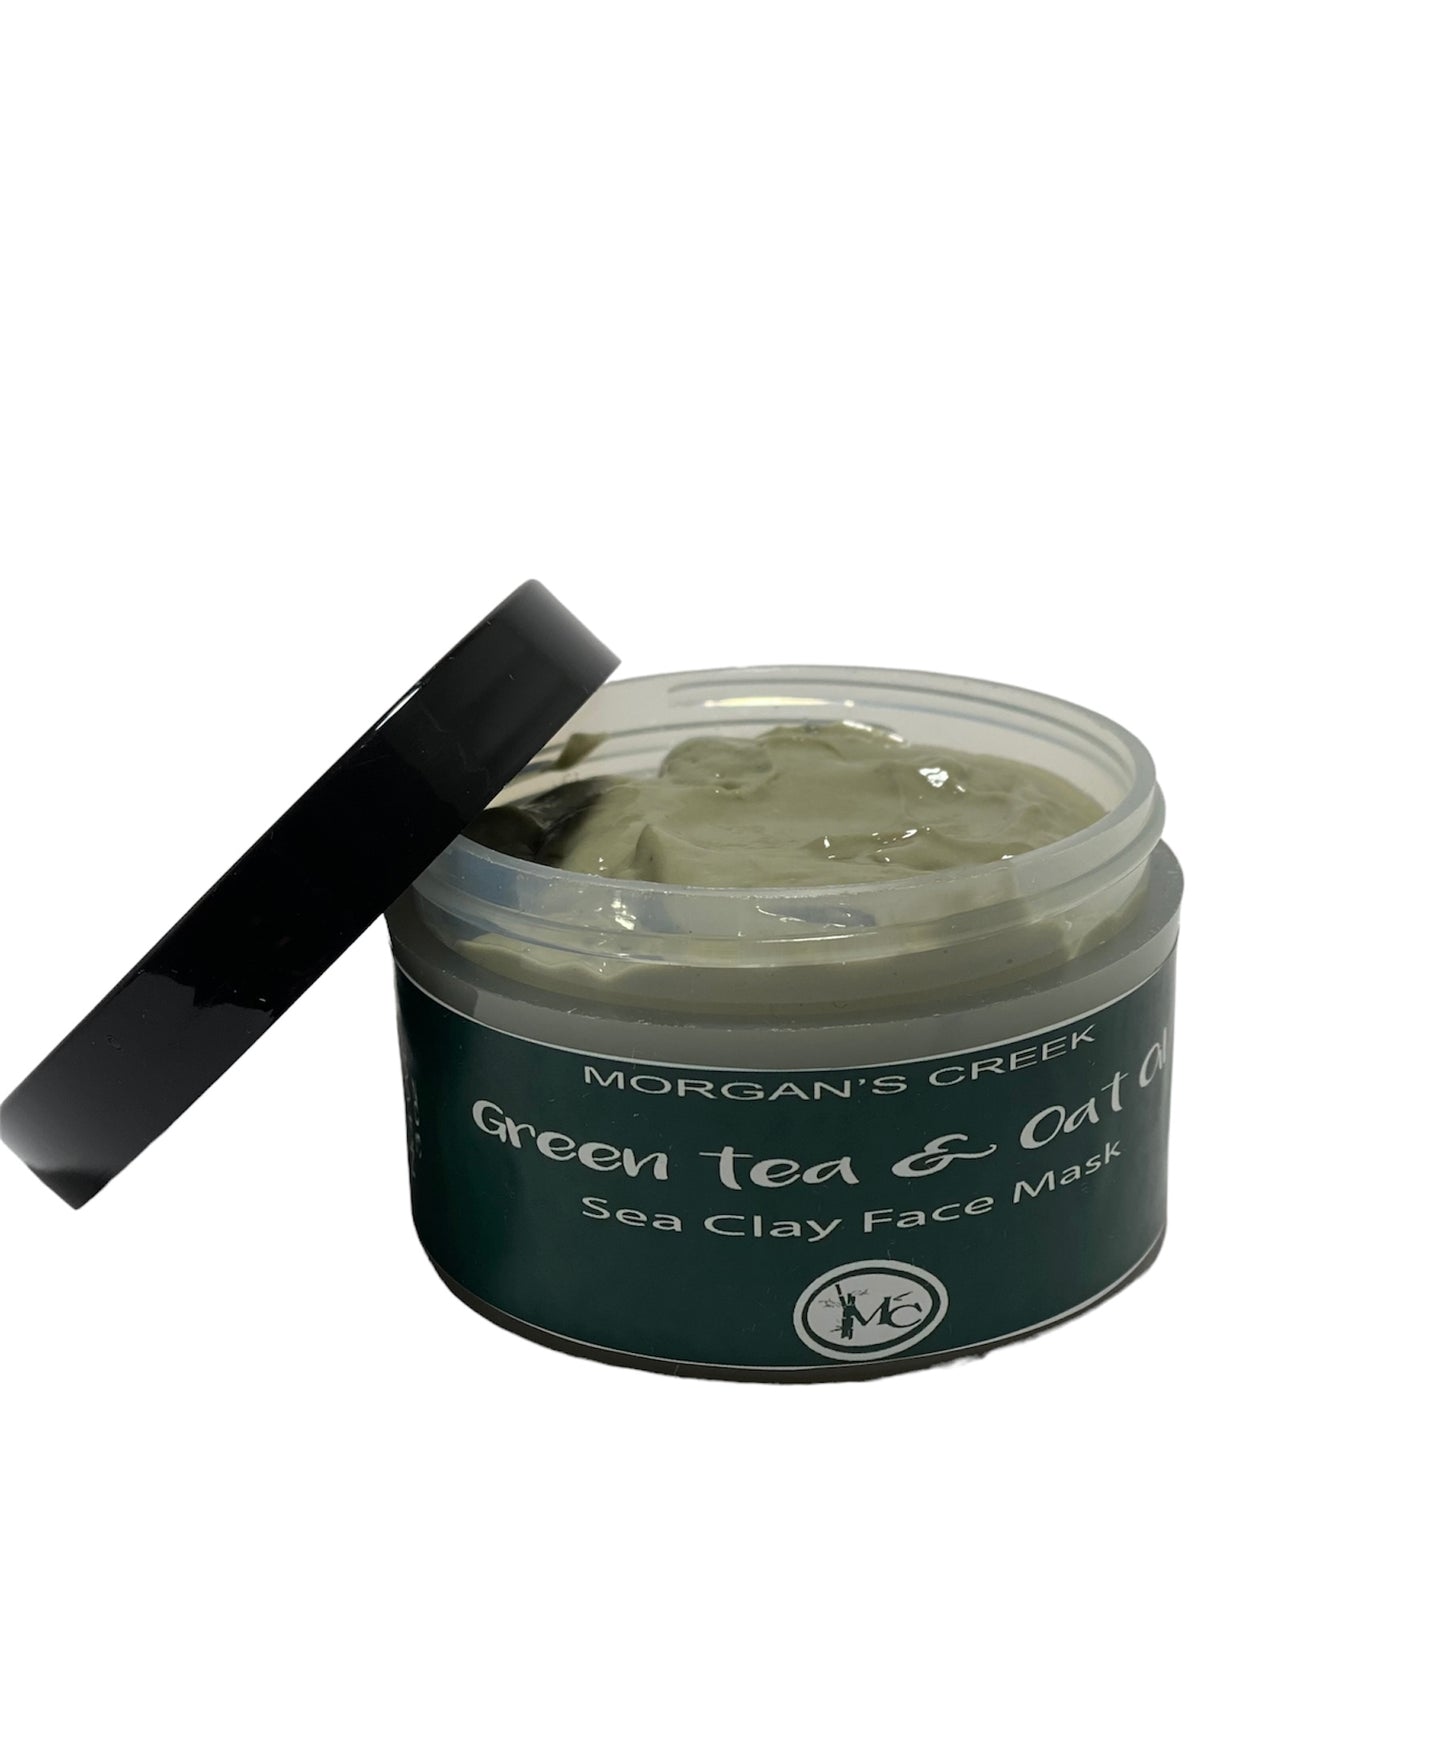 Green tea oat oil face mask